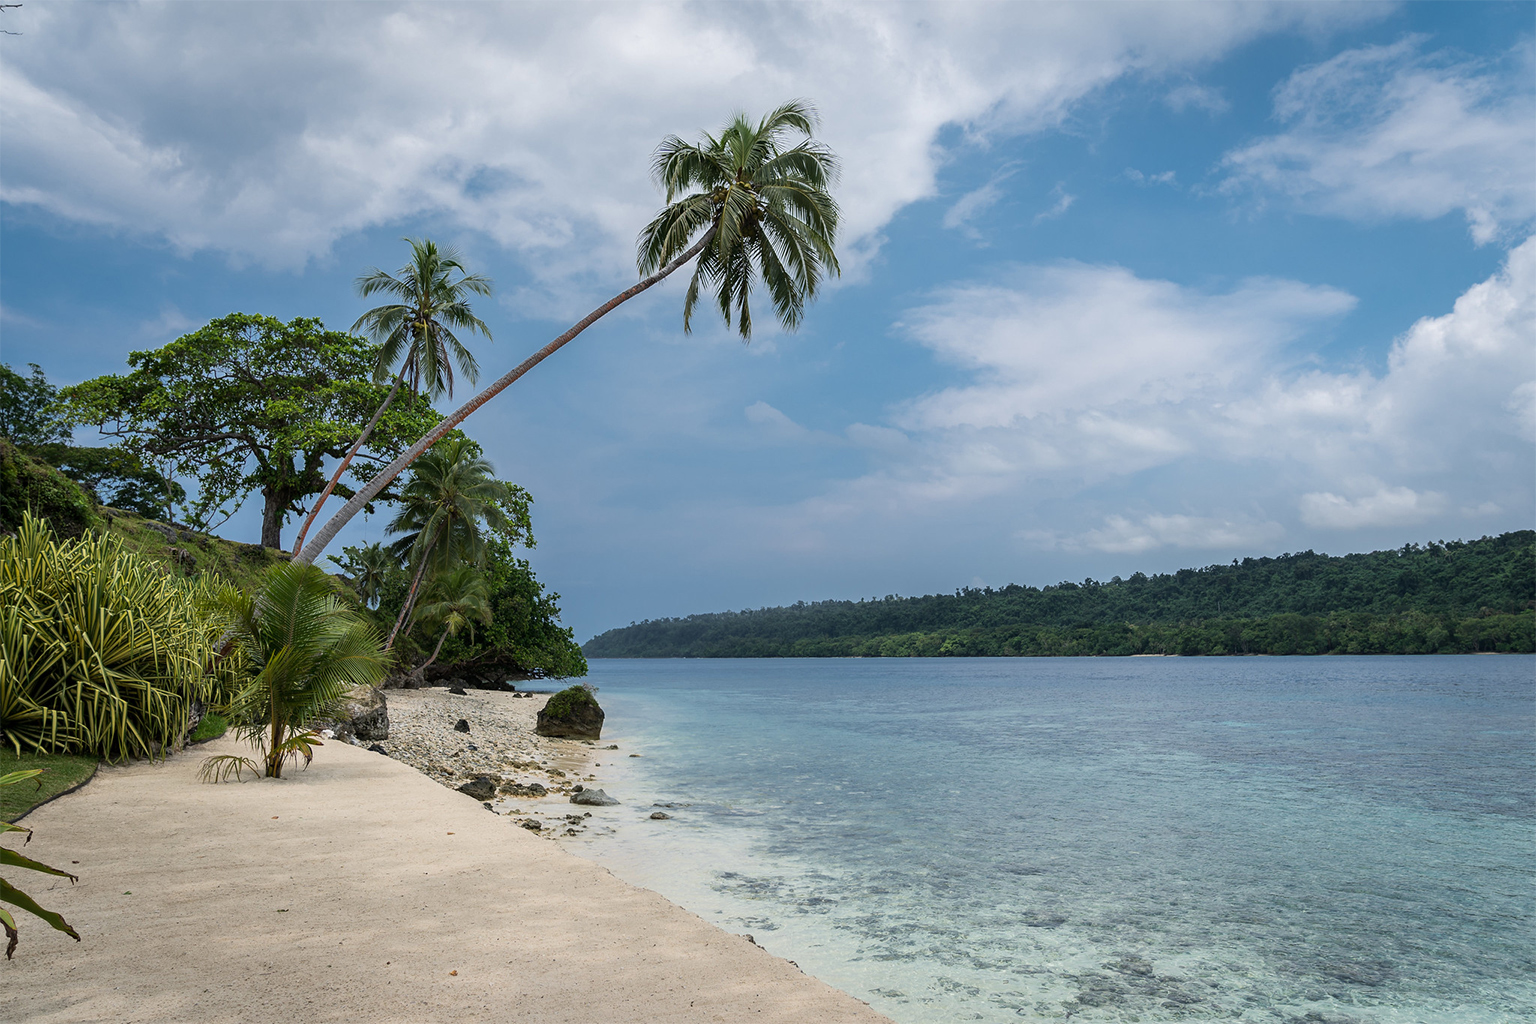 A beach in Vanuatu.